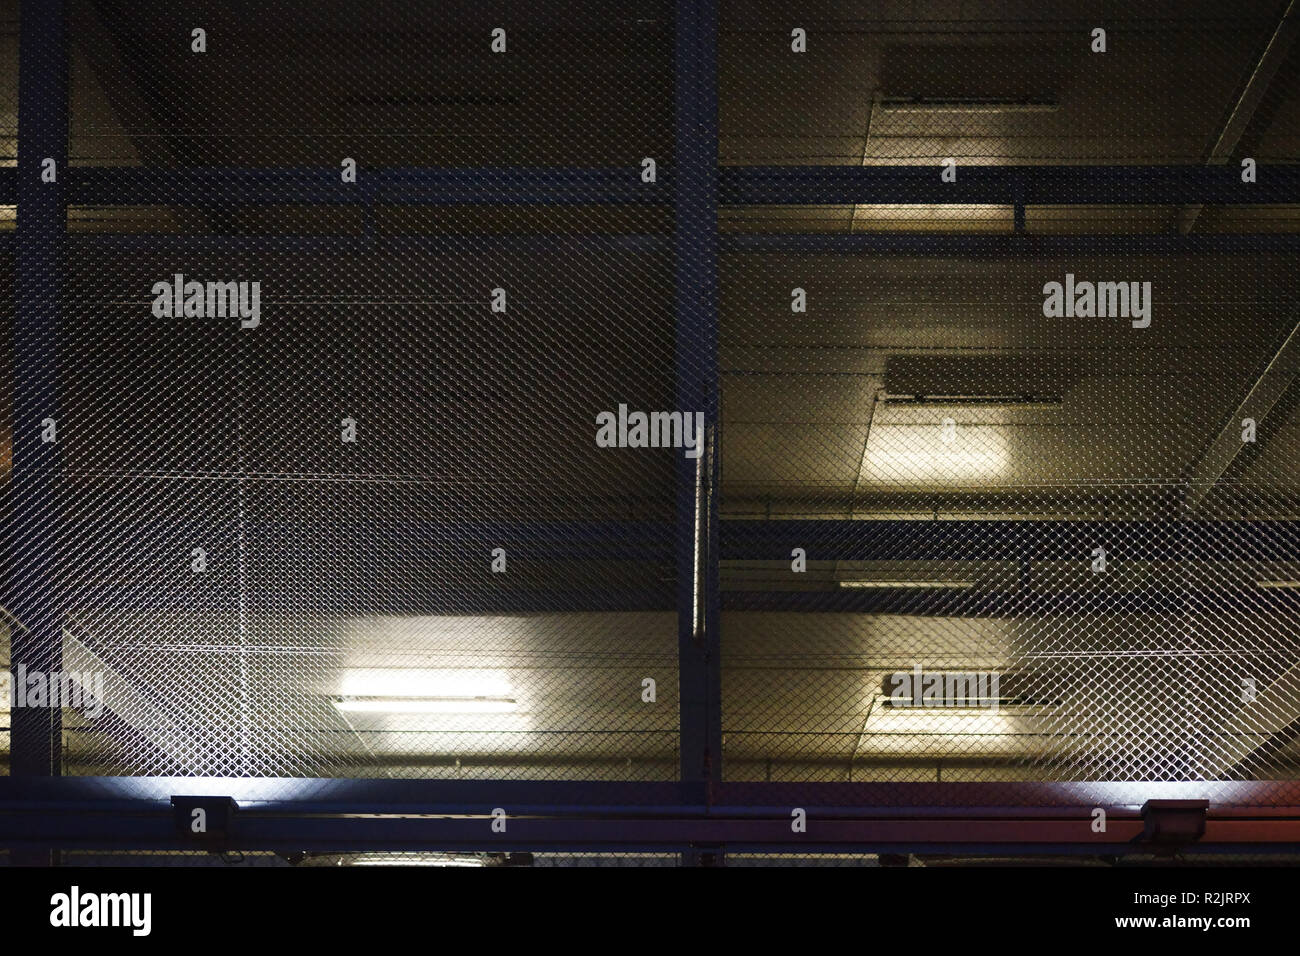 Eine offene Garage mit mehreren Parkdecks durch Gitter Draht geschützt wird nachts beleuchtet Stockfoto